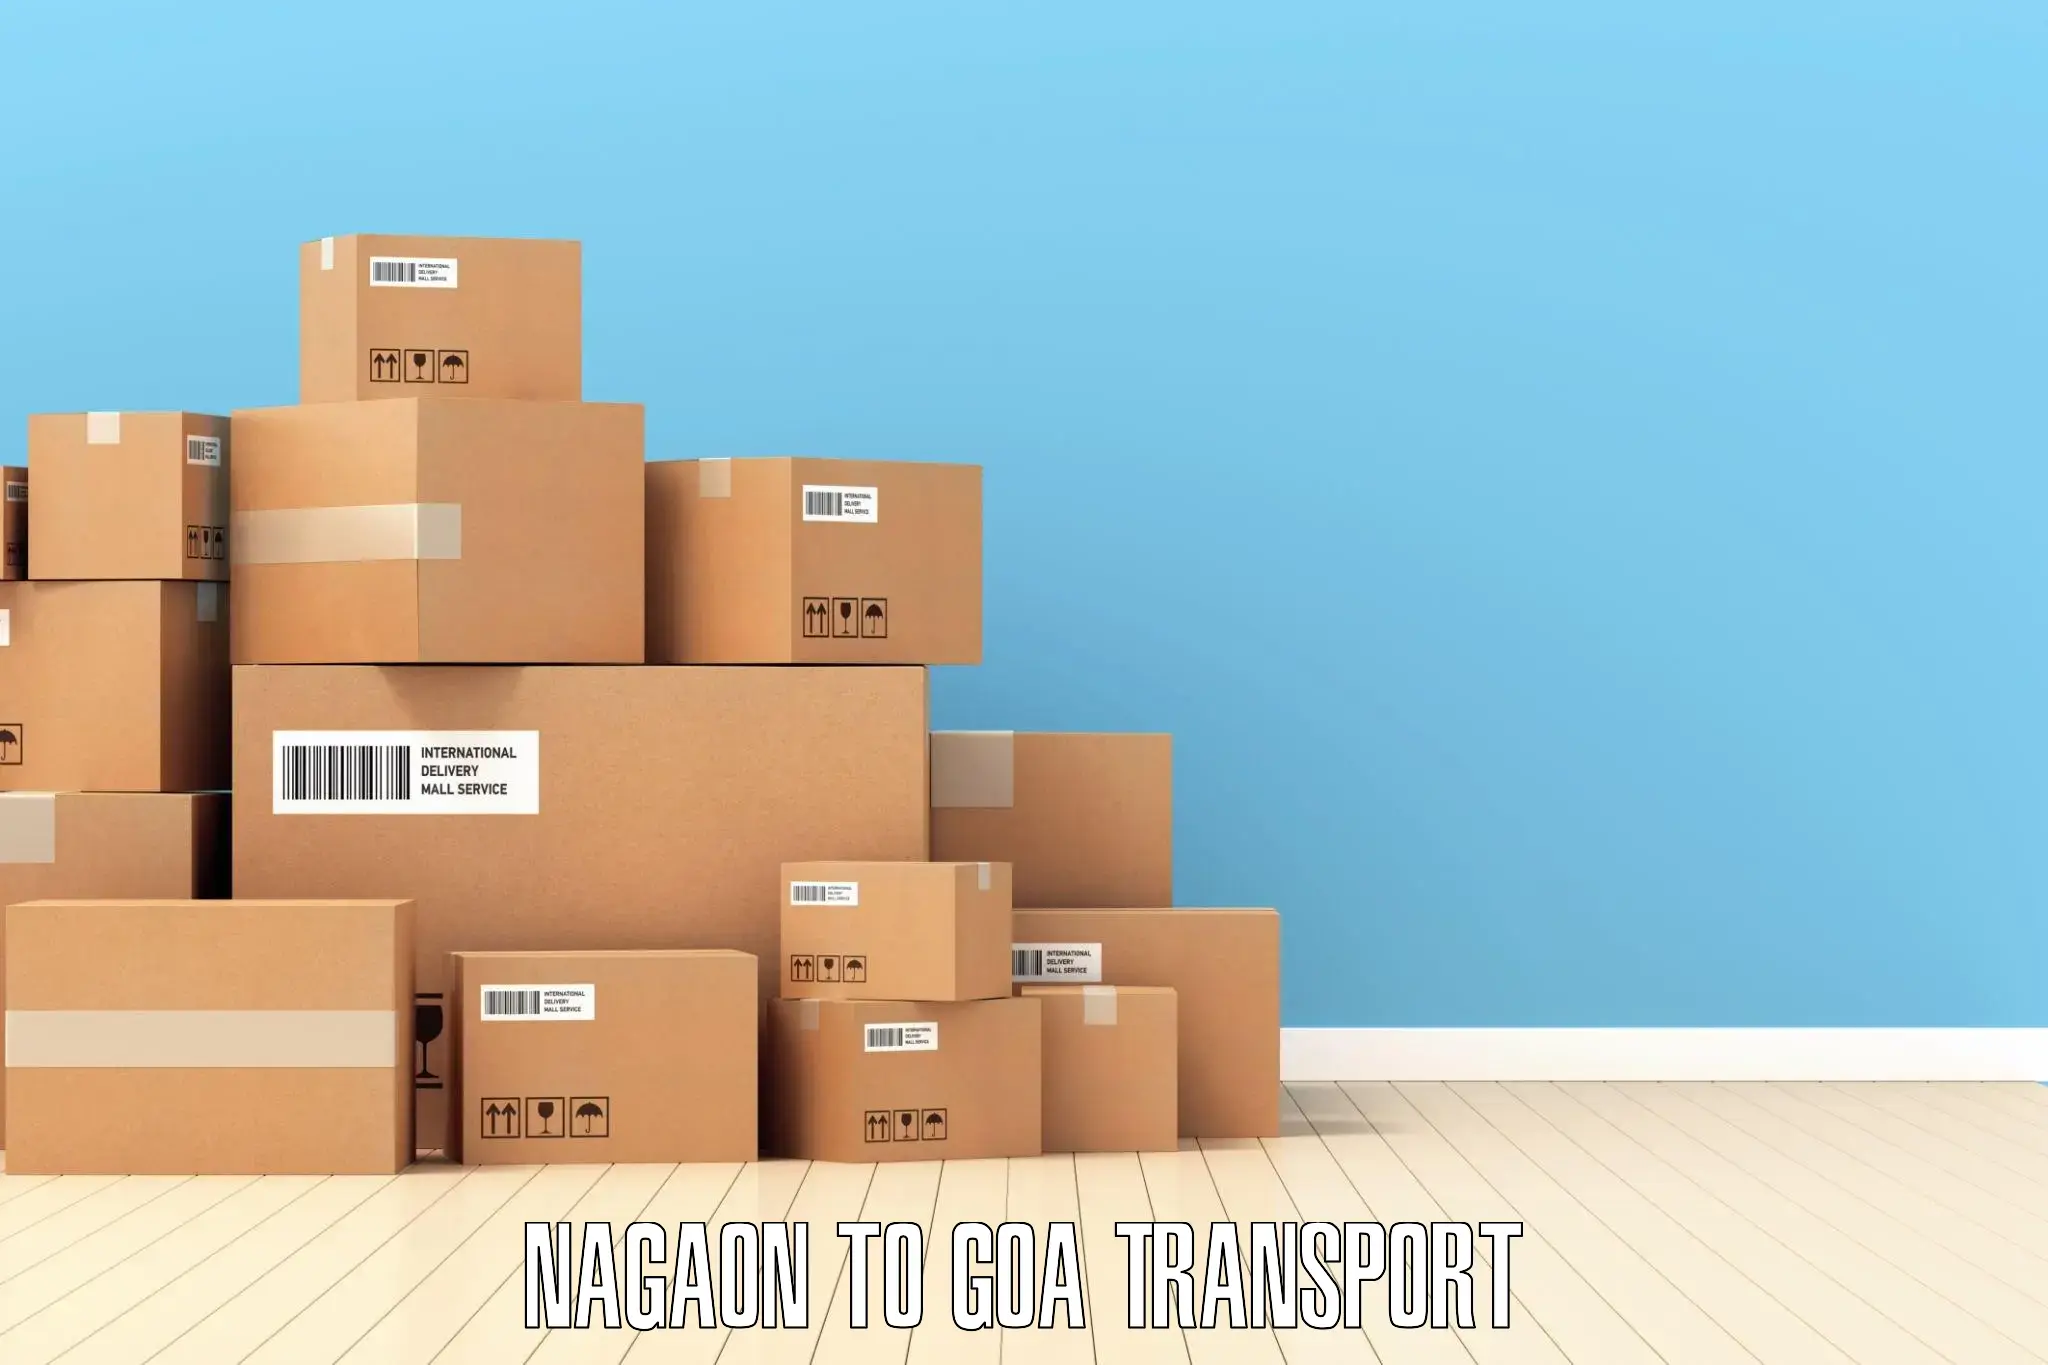 Vehicle parcel service Nagaon to Mormugao Port